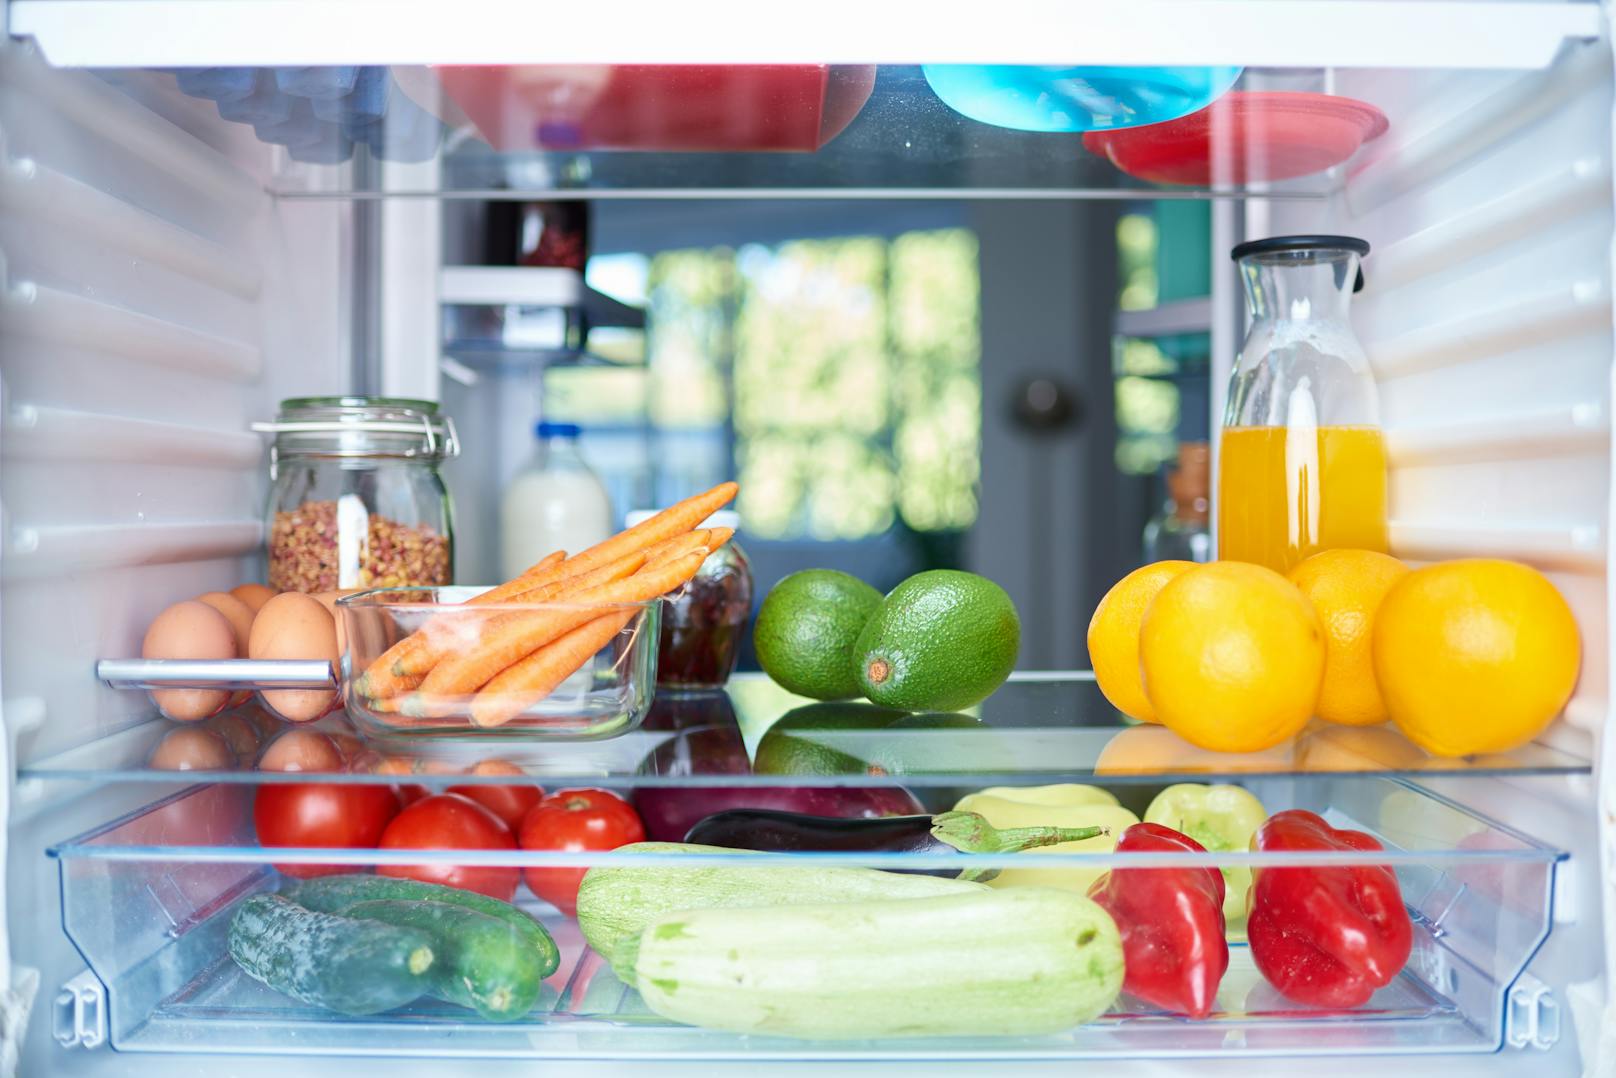 Oft bleibt das Gemüse nicht lange frisch, obwohl es im dafür vorgesehenen Gemüsefach des Kühlschranks bei der richtigen Temperatur gelagert wurde. 